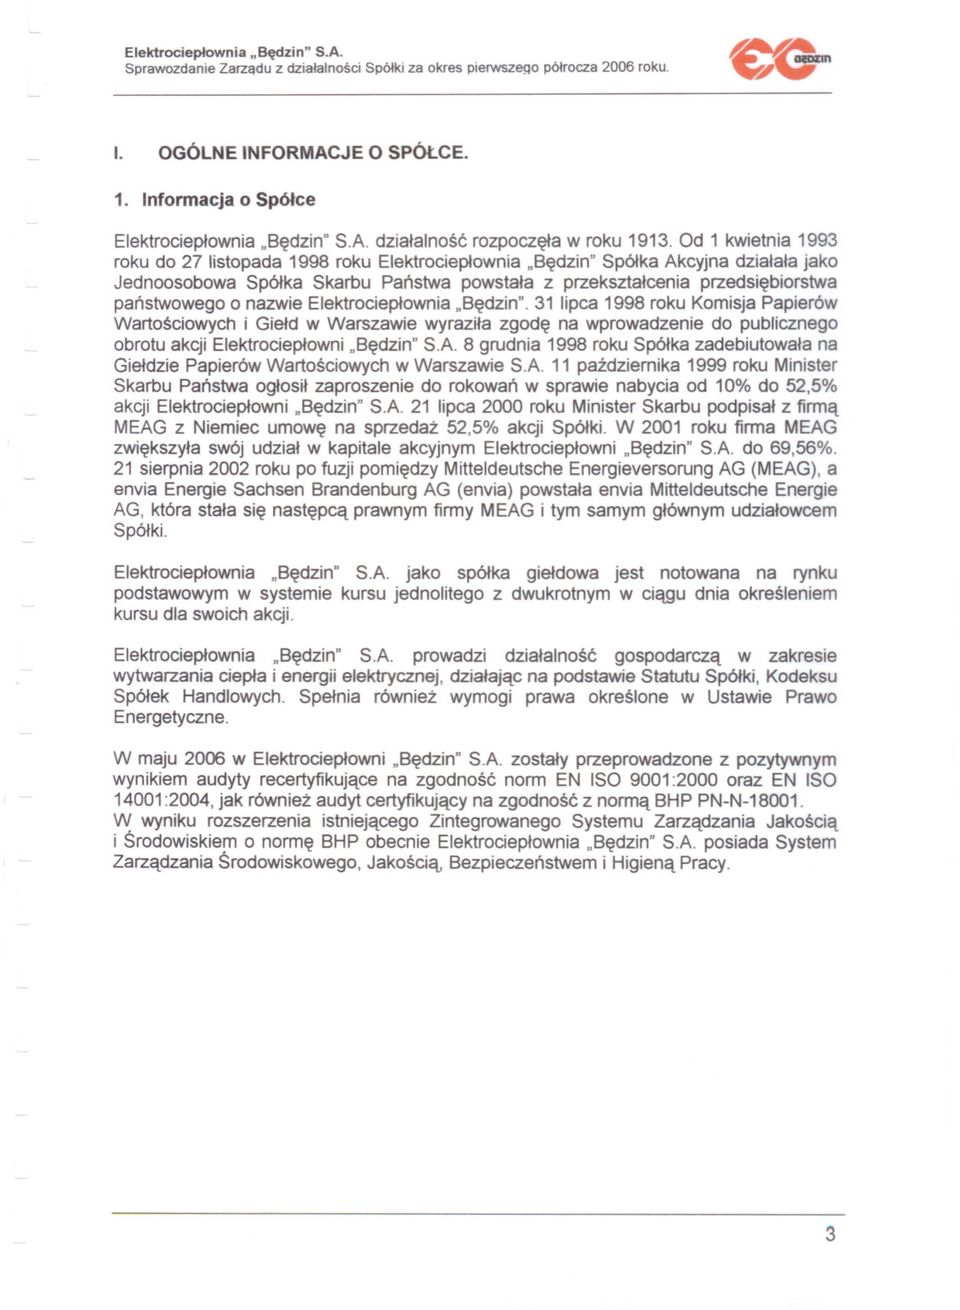 nazwie Elektrocieplownia "Bedzin". 31 lipca 1998 roku Komisja Papierów Wartosciowych i Gield w Warszawie wyrazila zgode na wprowadzenie do publicznego obrotu akcji Elektrocieplowni "Bedzin" S.A.